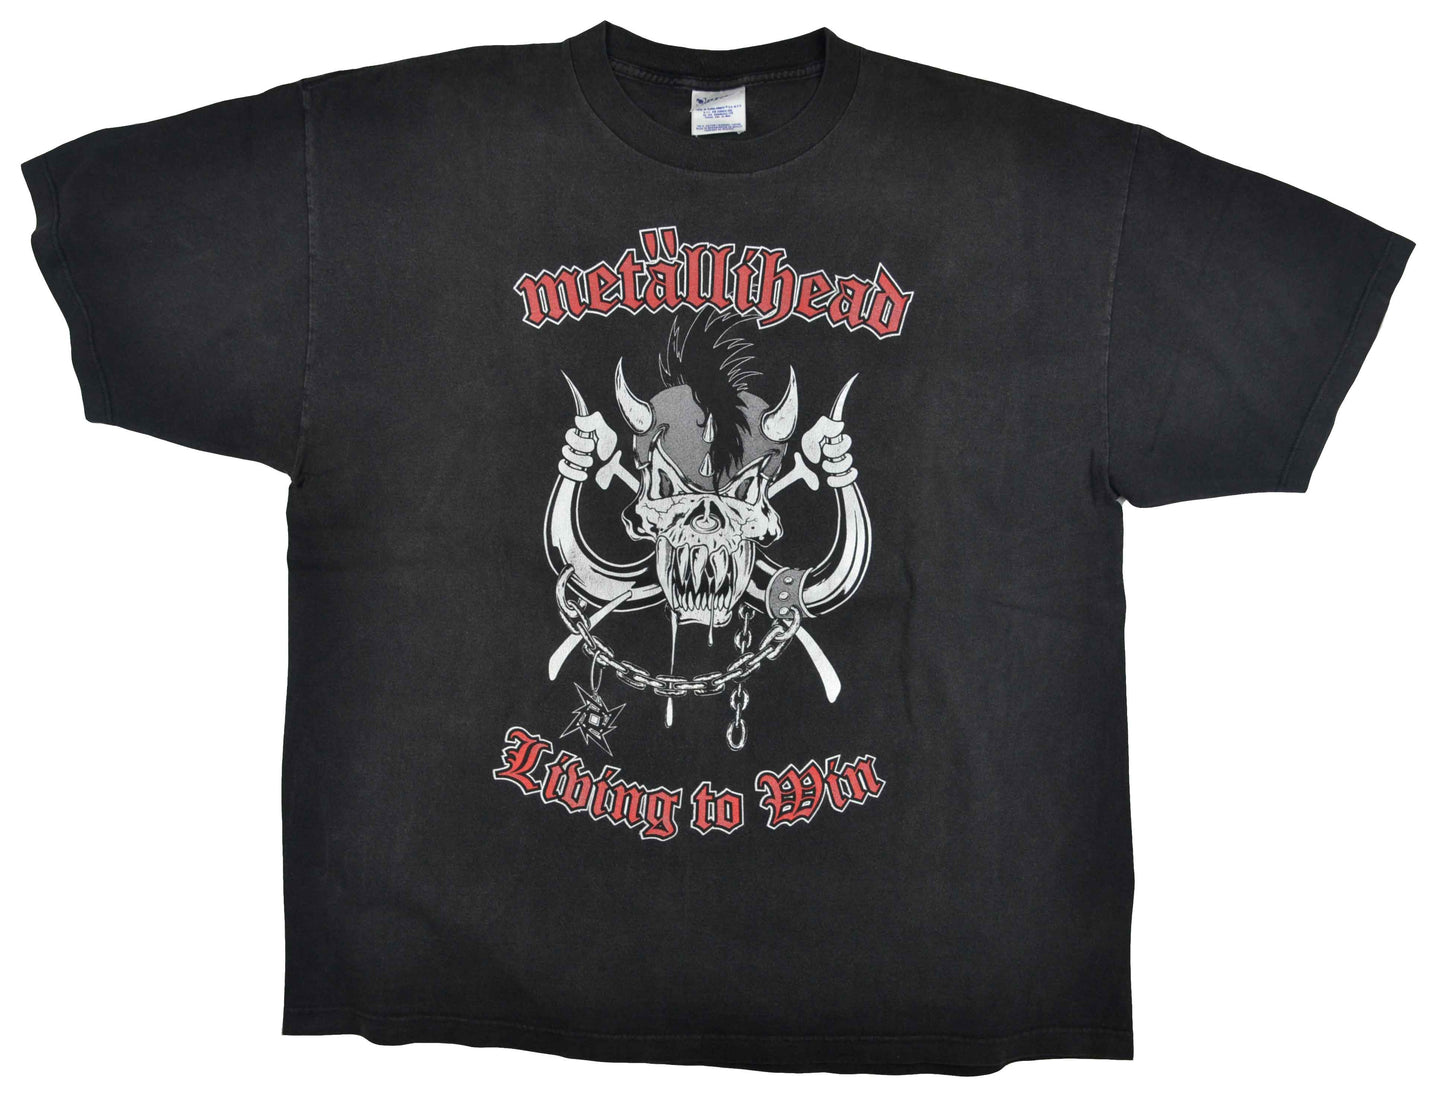 1999 METALLICA "Metällihead" Shirt - Two Vault Vintage